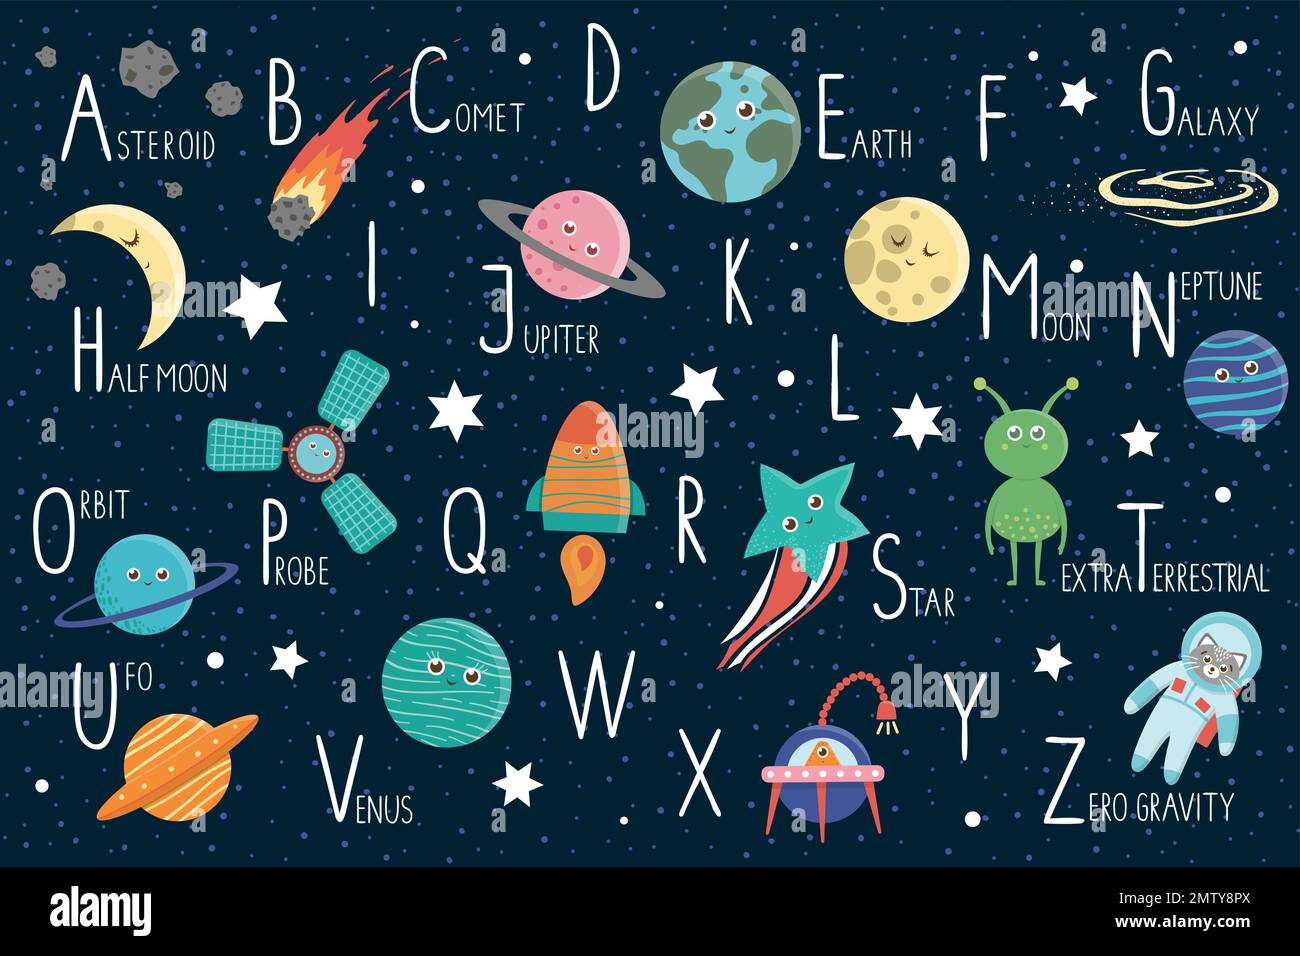 Weltraumalphabet für Kinder. Süßes flaches ABC mit Galaxie, Sternen, Astronauten, Außerirdischen, Planet, Raumschiff, Sonde, Komet, Asteroid Stock Vektor